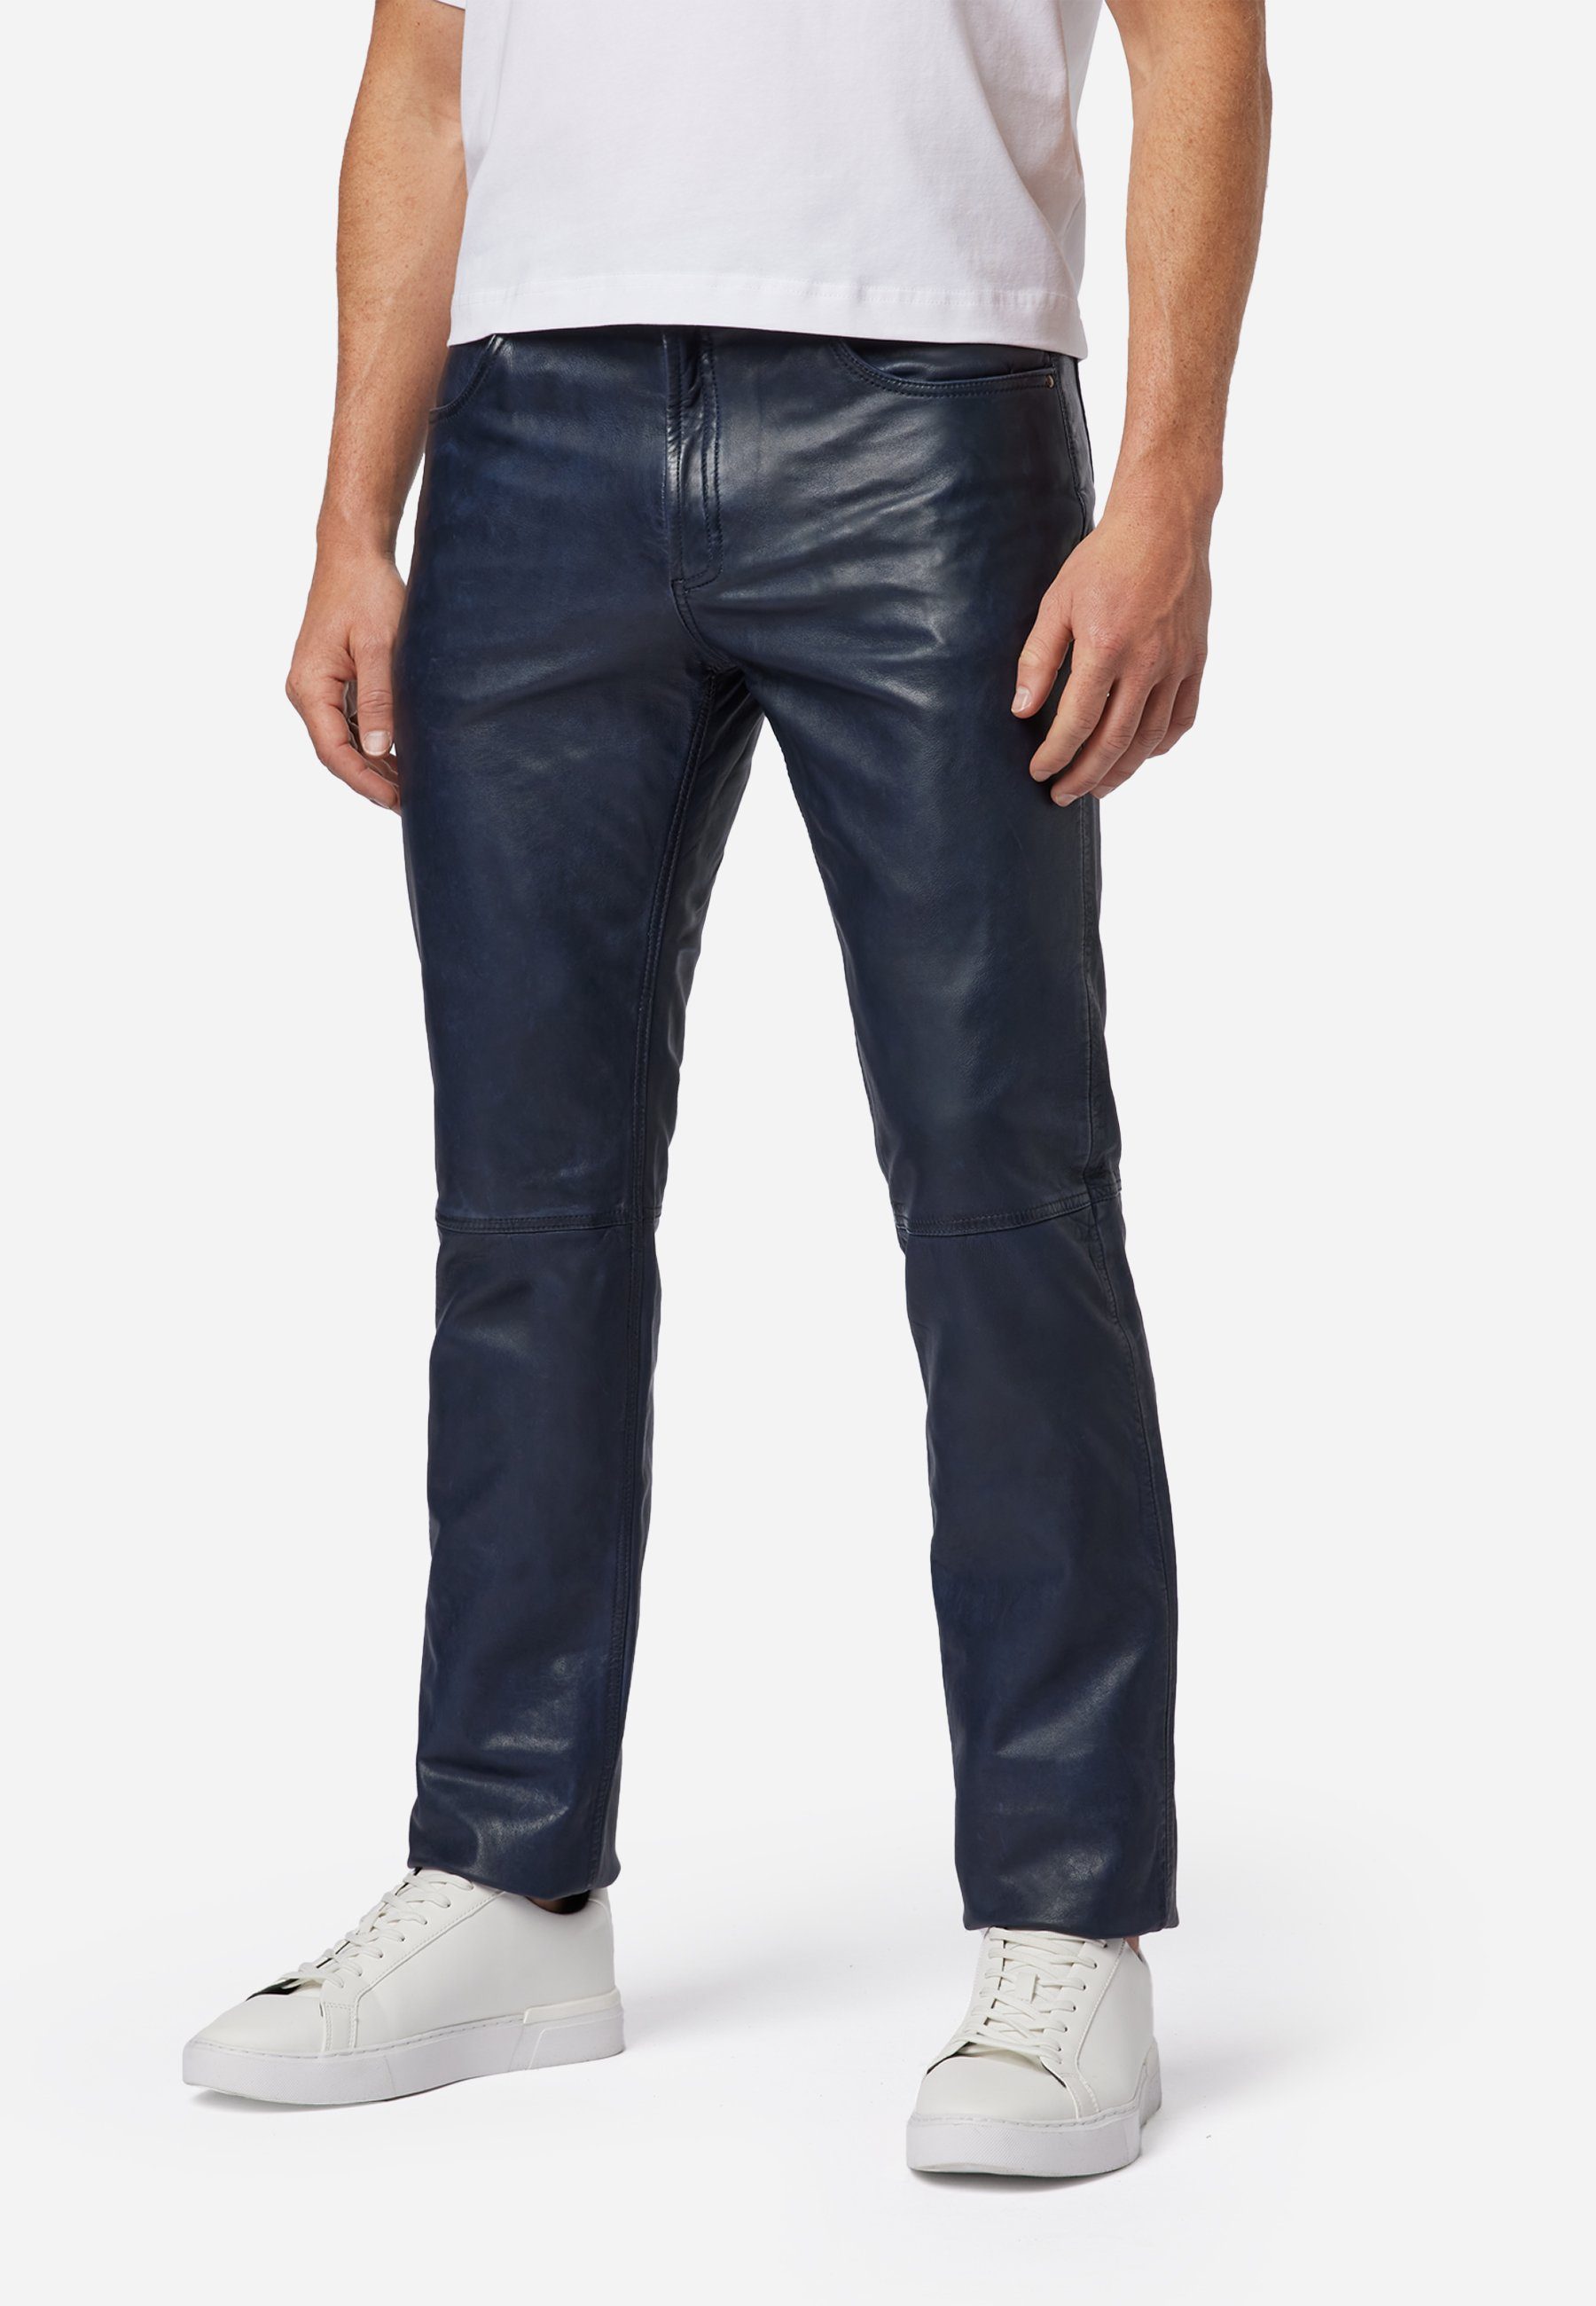 RICANO Lederhose Trant Pant Hochwertiges Lamm-Nappa Leder; 5-Pocket Jeans- Optik